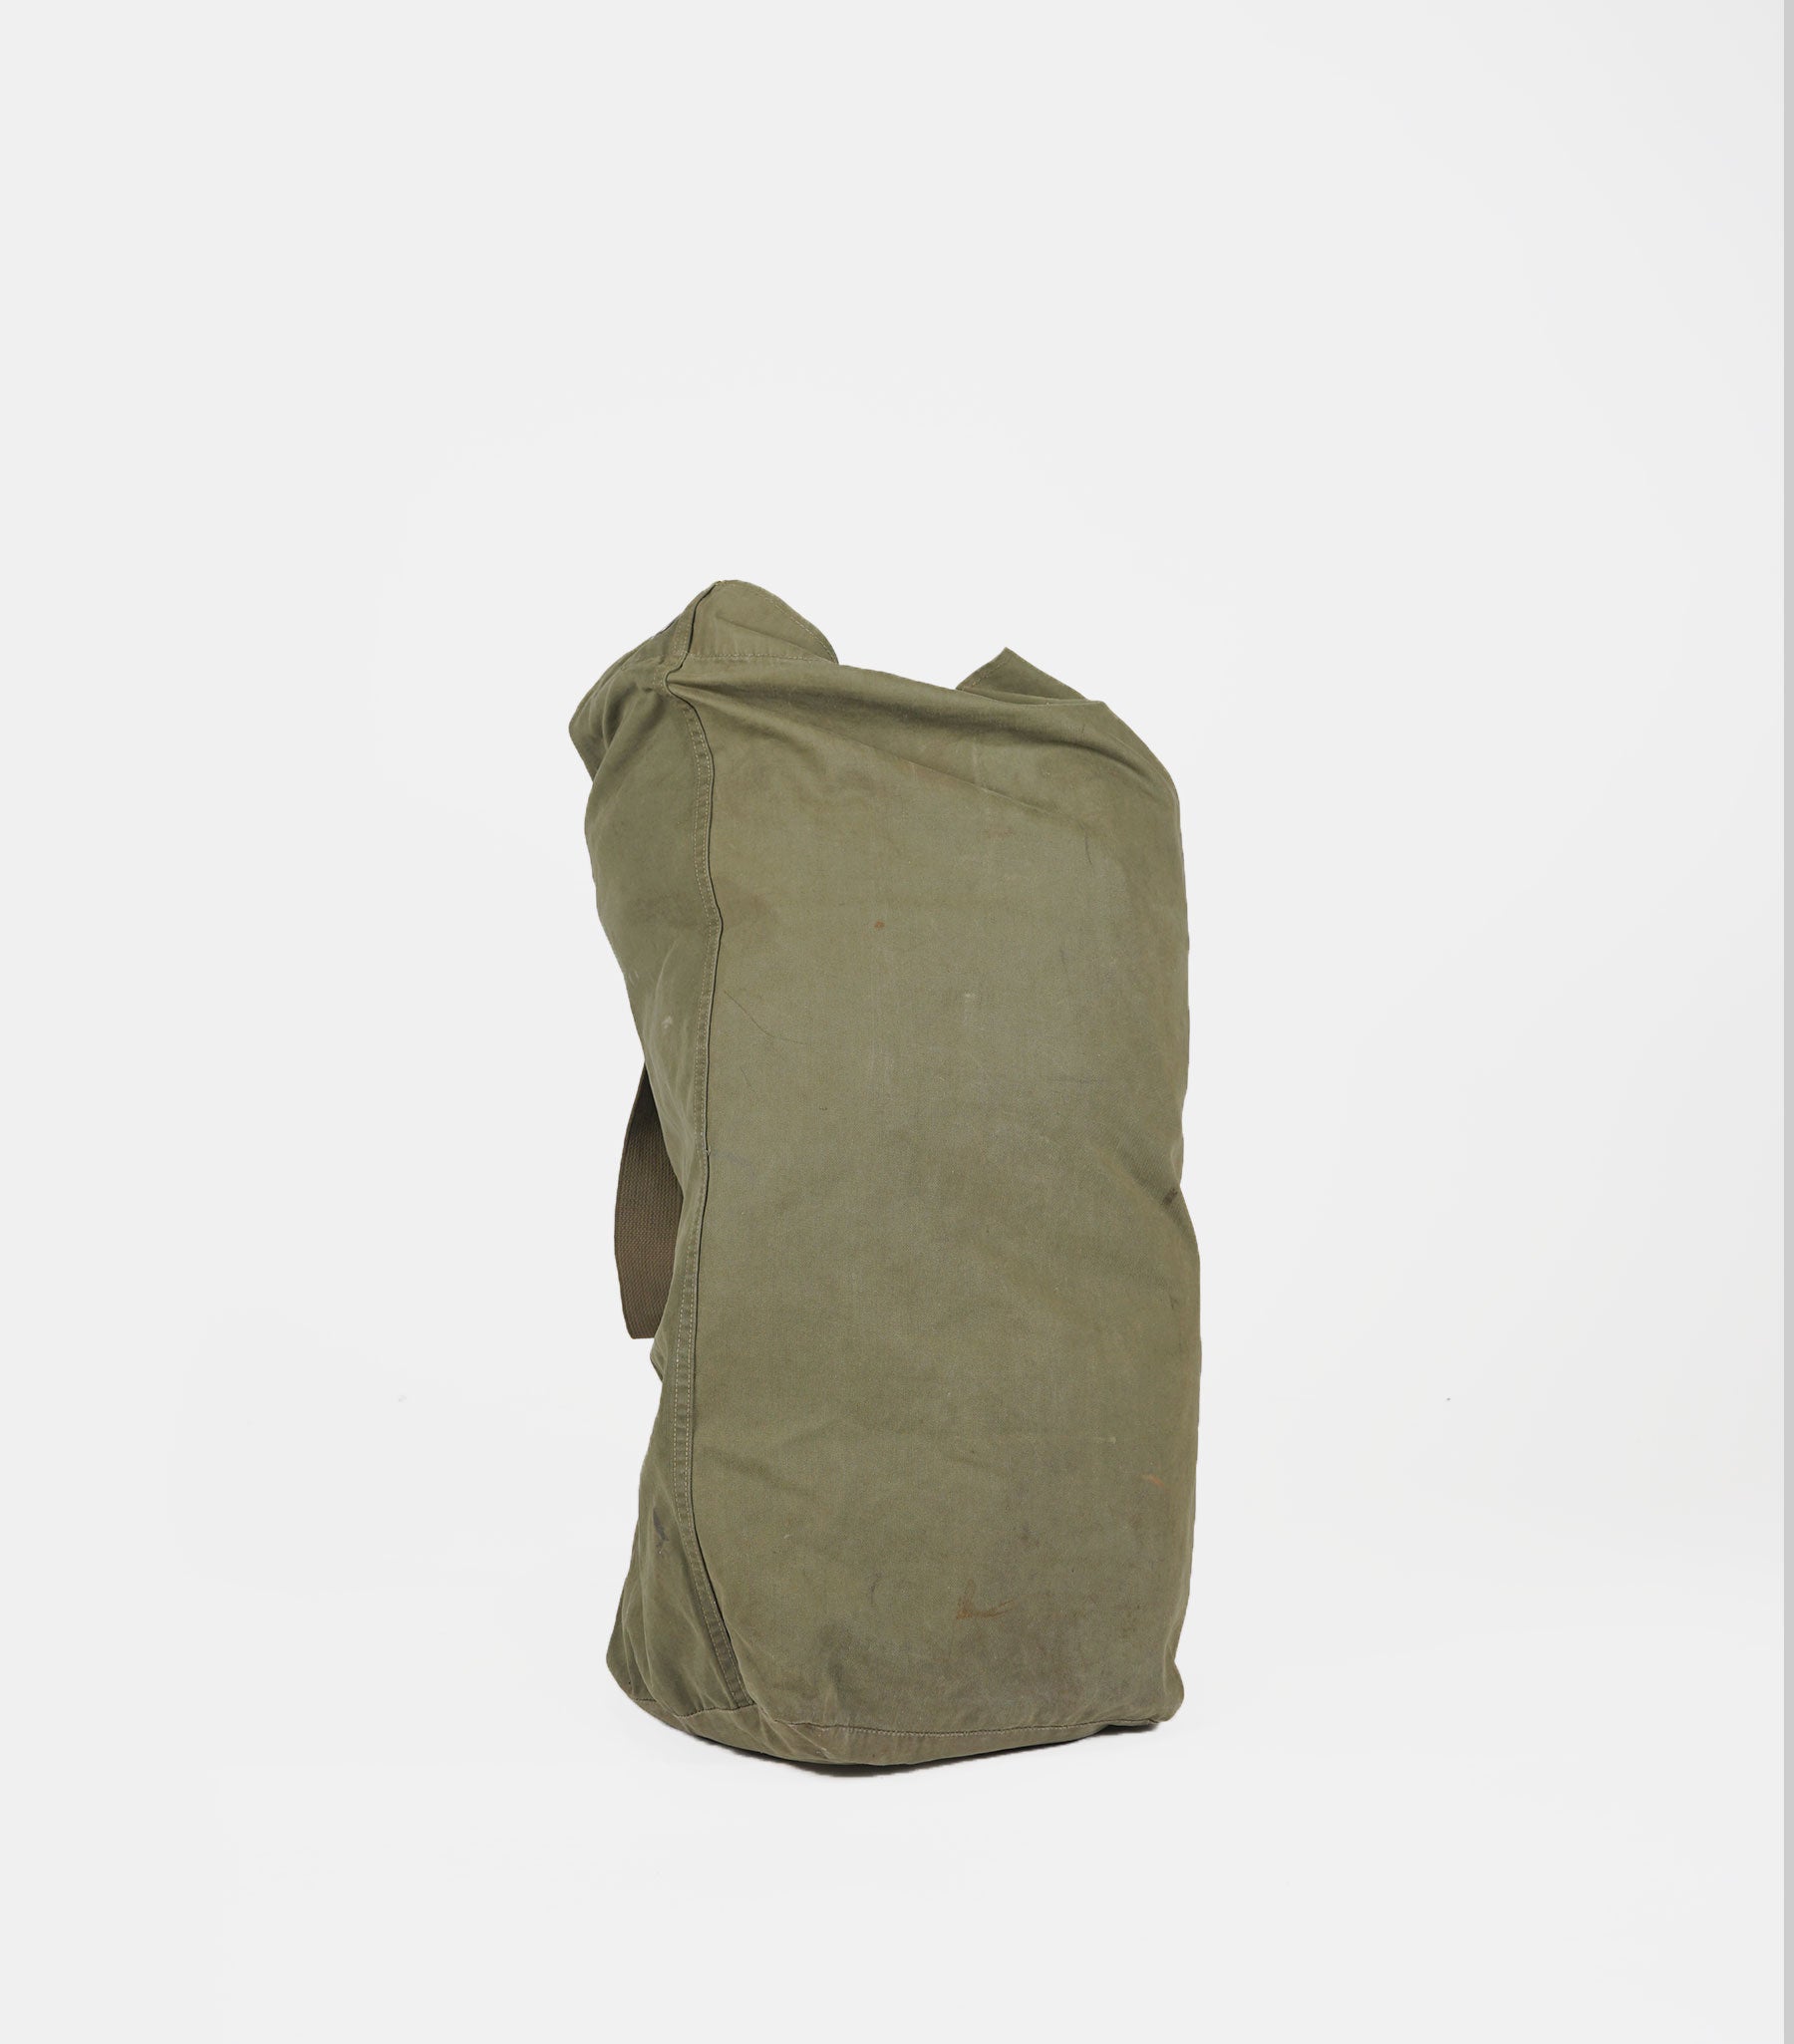 1960's-1970's Vietnam War Duffle Bag